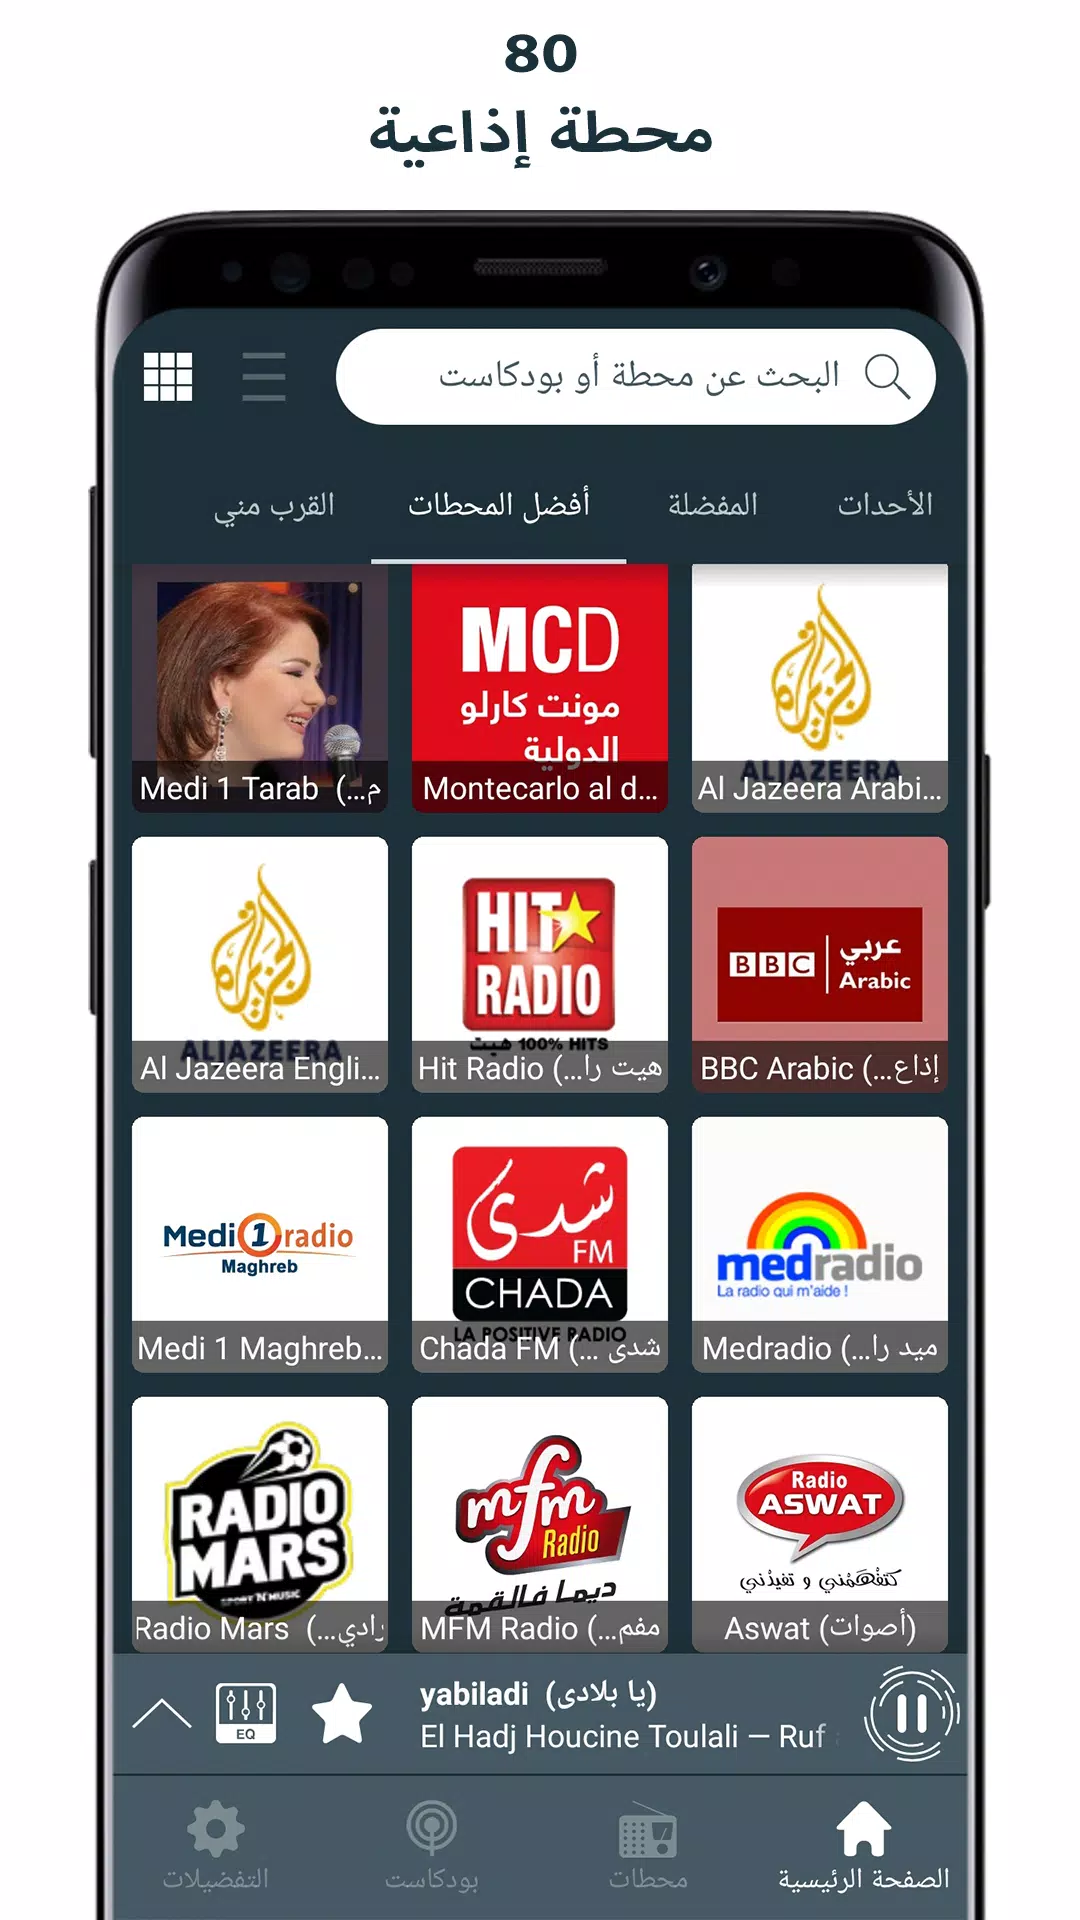 Radio Maroc APK pour Android Télécharger